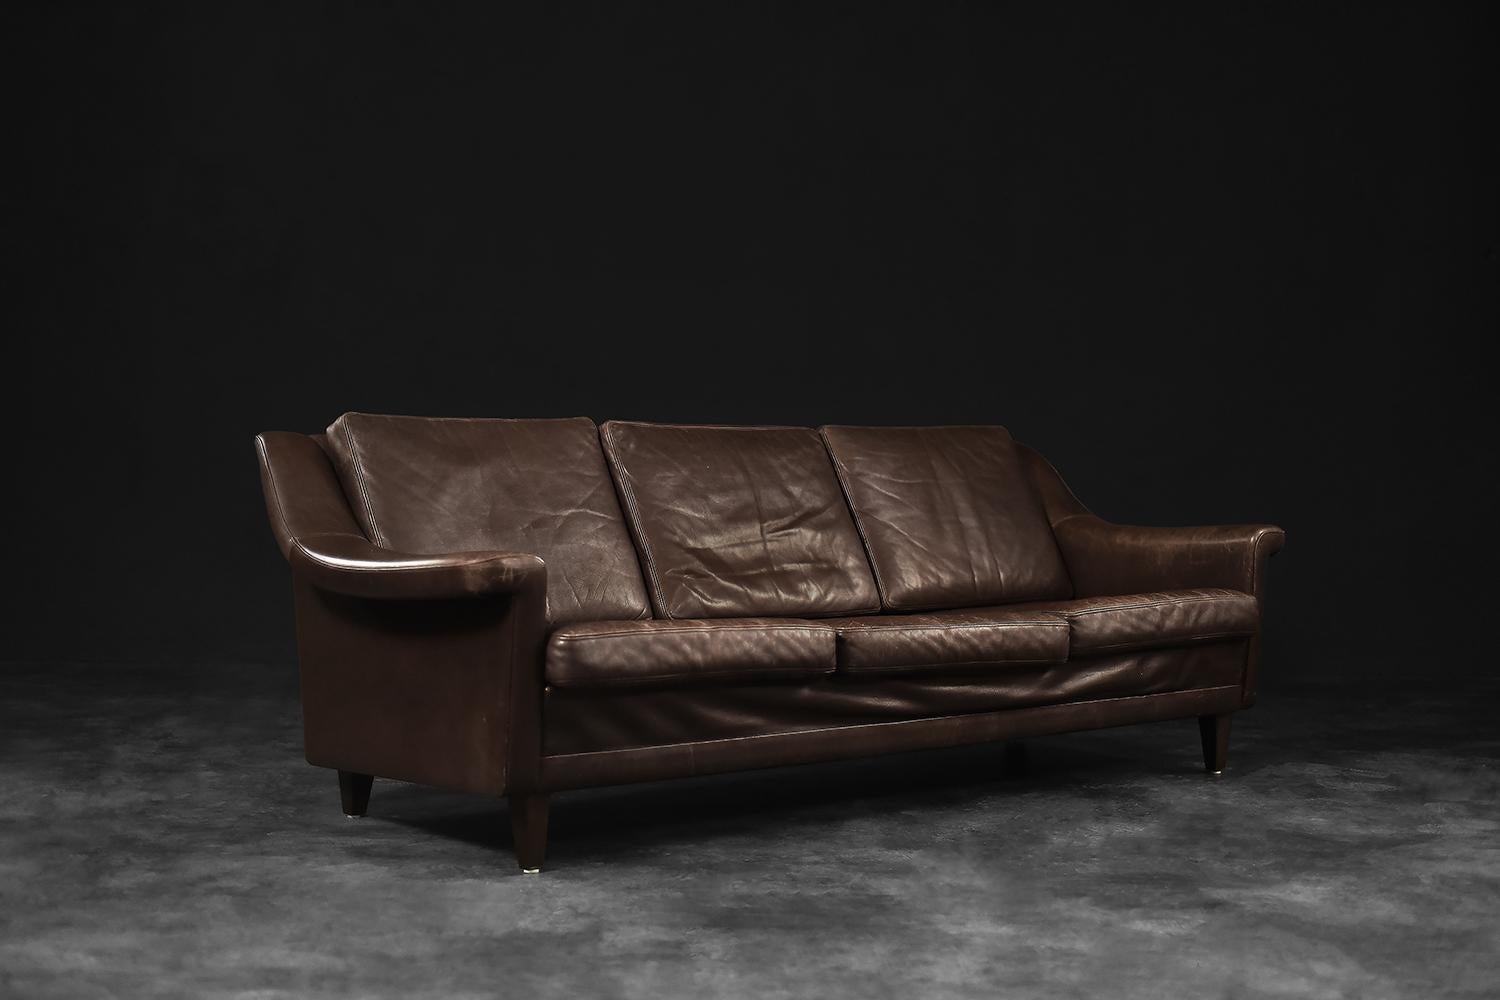 Dieses breite dreisitzige Sofa wurde in den 1970er Jahren in Dänemark hergestellt. Der modernistische Rahmen mit sechs Kissen ist mit kastanienfarbenem Naturleder gepolstert. Das Sofa hat dezent abgerundete Kanten und Armlehnen. Der breite und